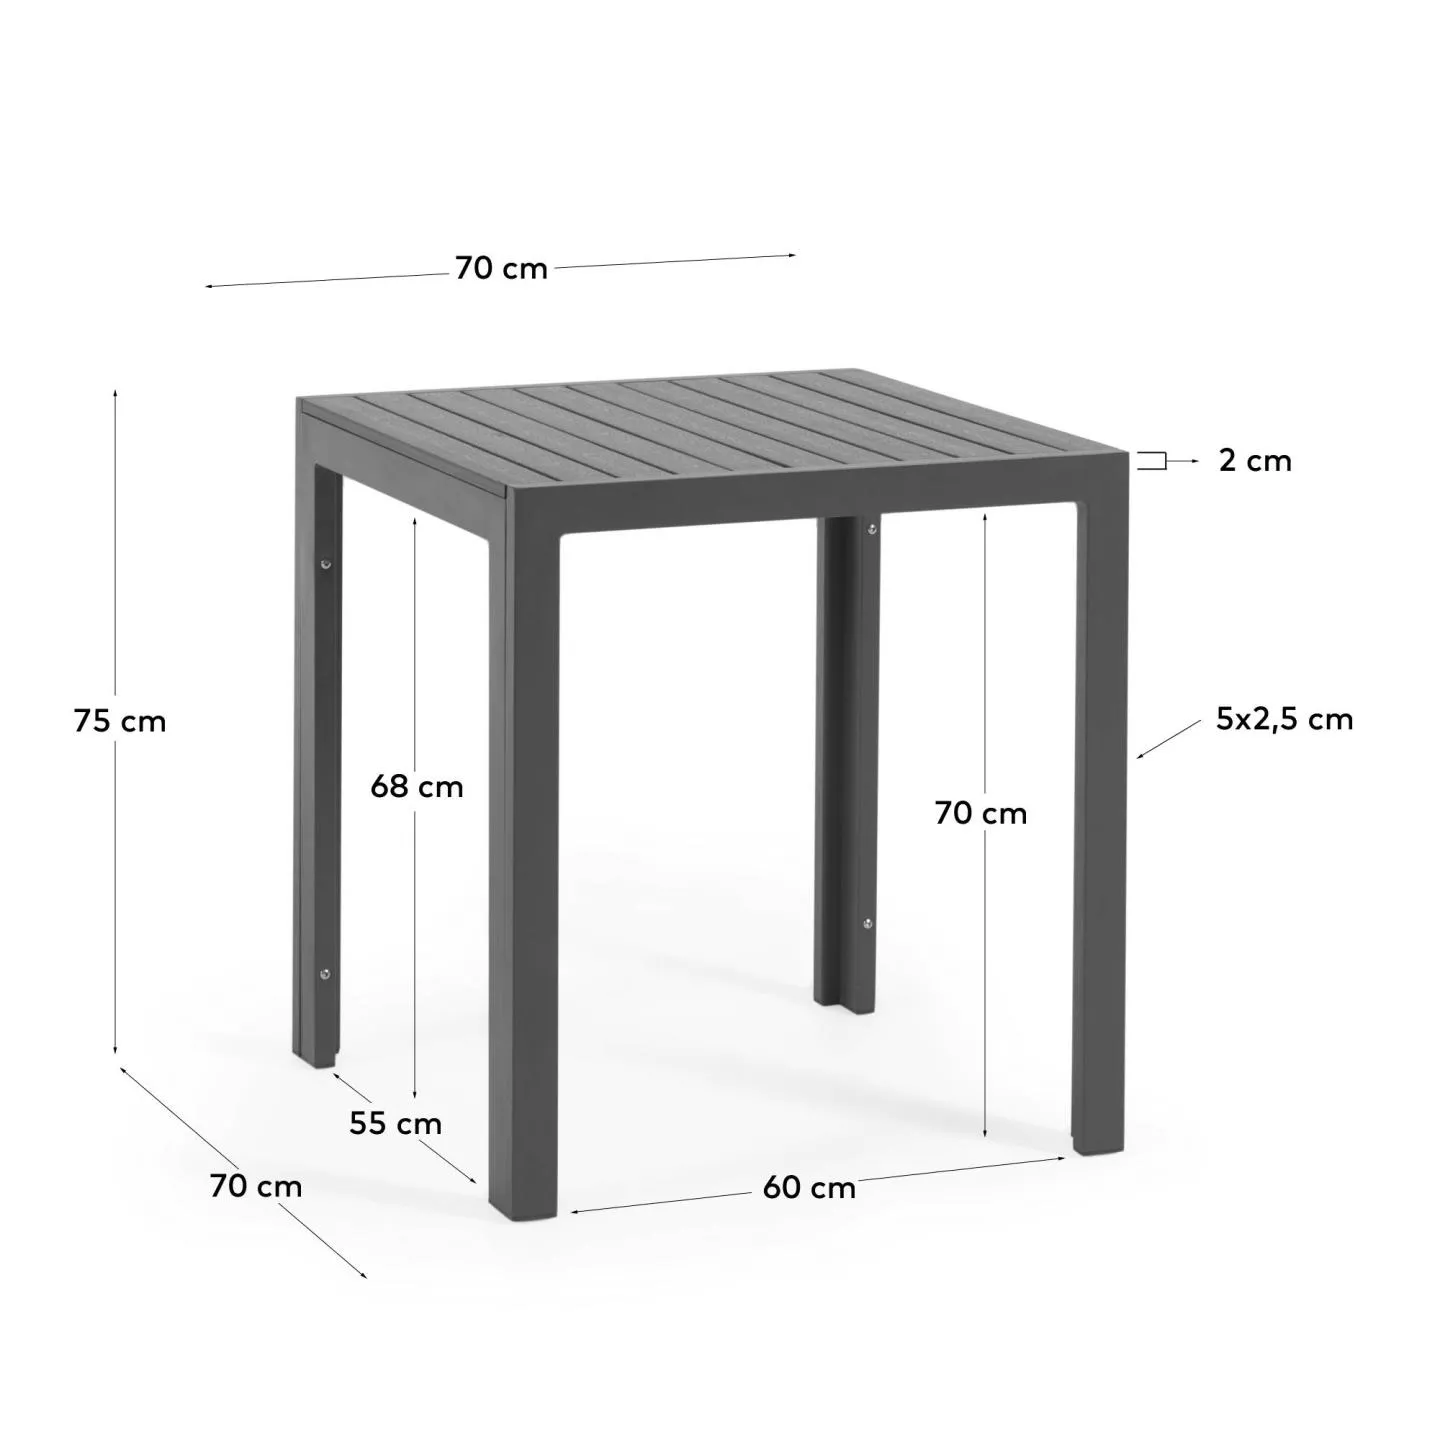 Стол для улицы La Forma Sirley из черного алюминия 70 x 70 см